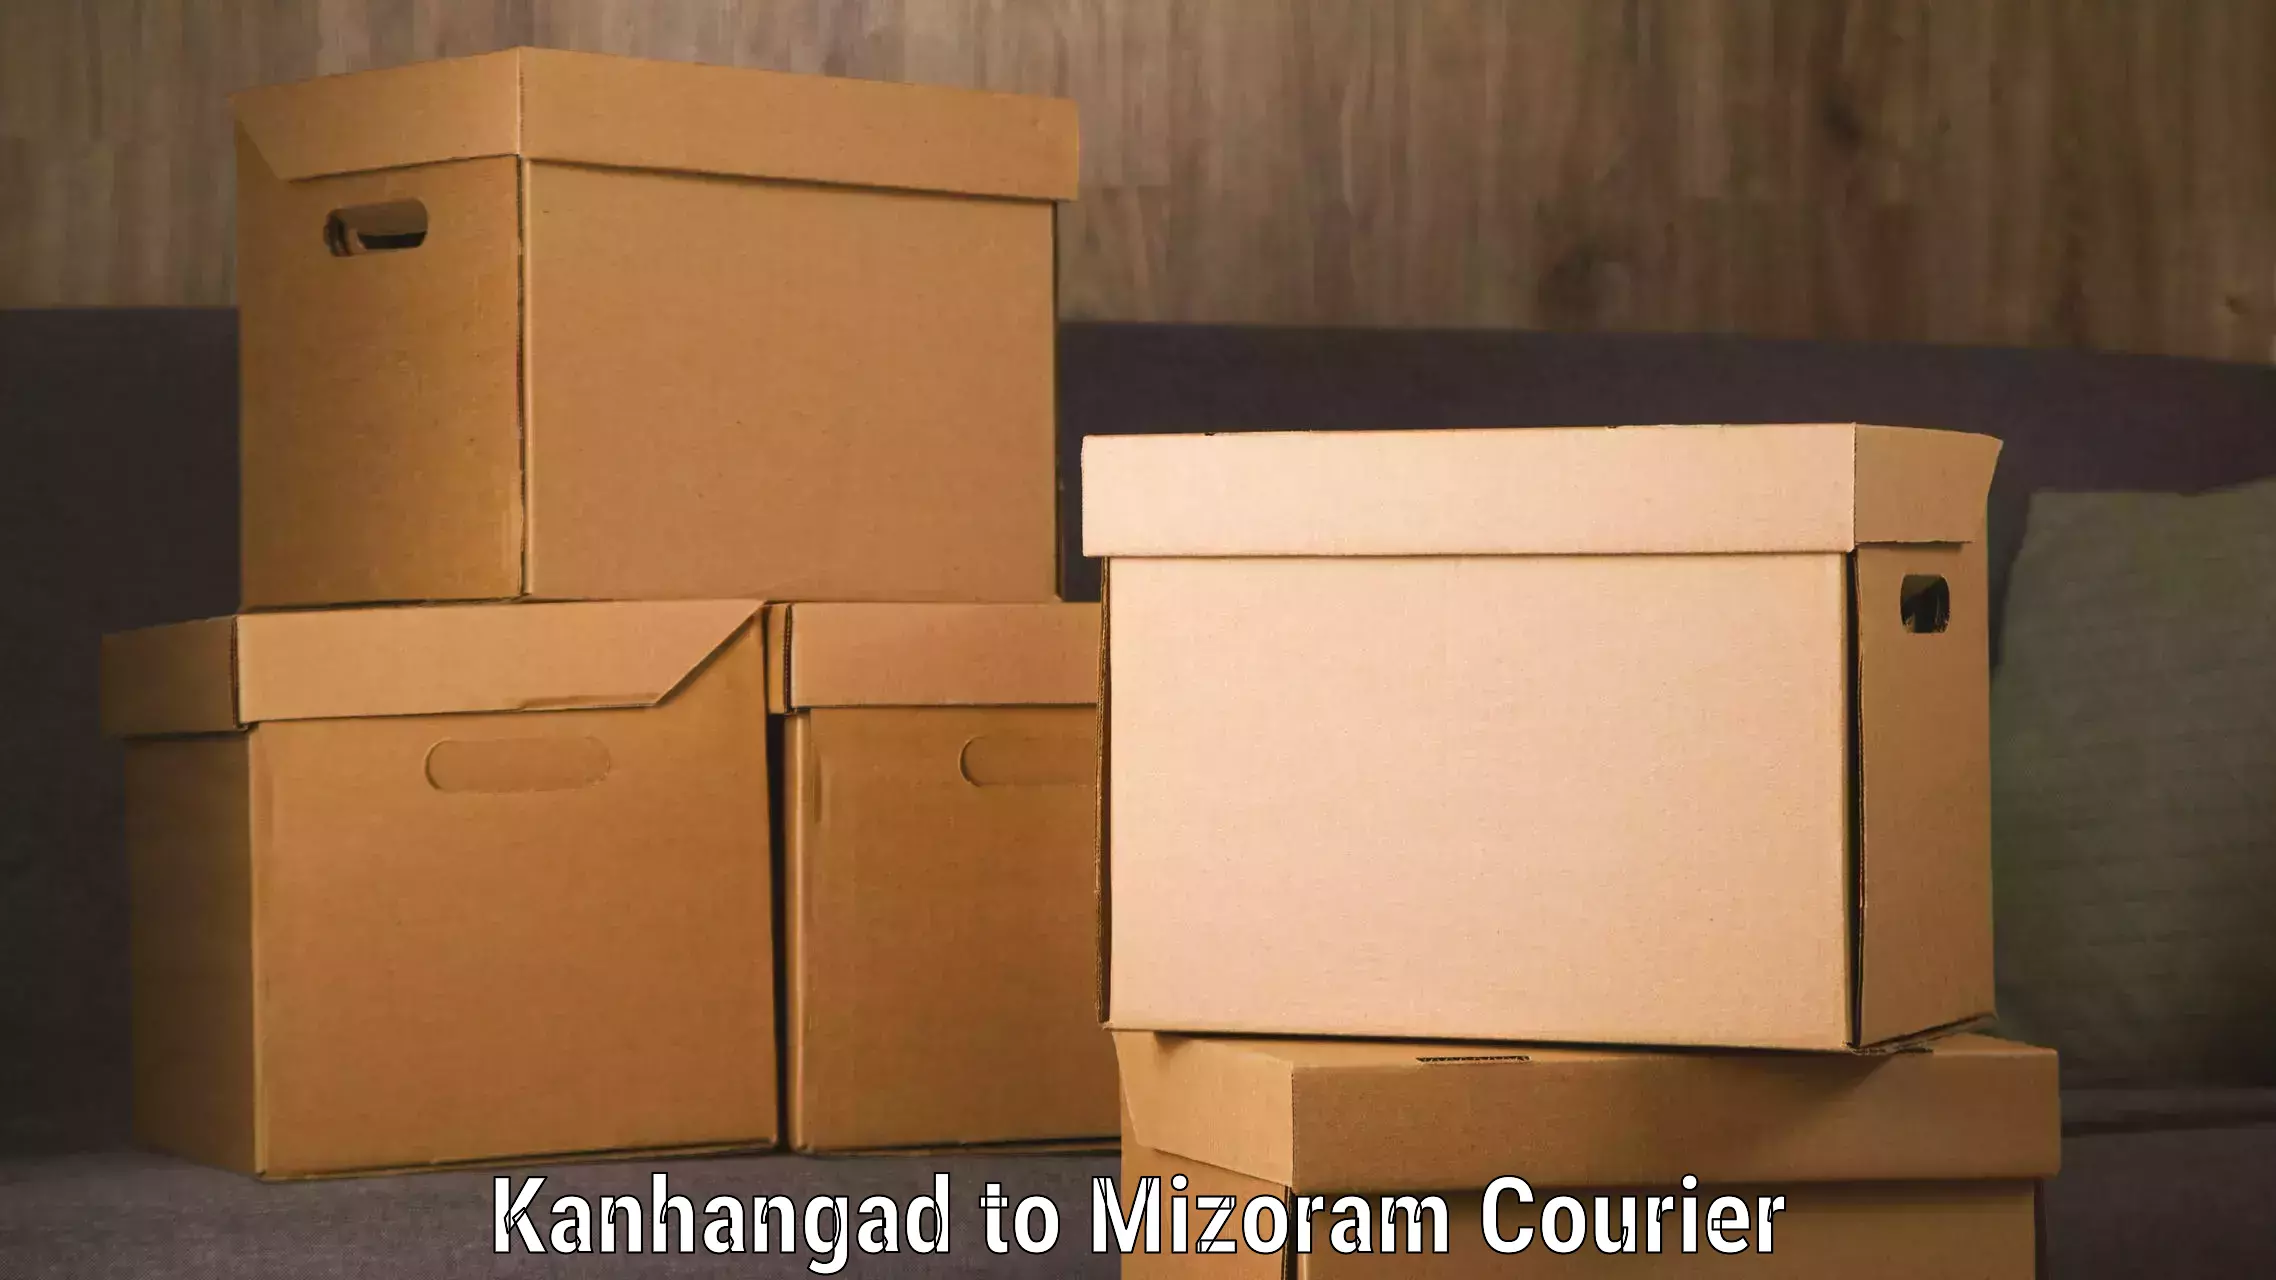 Express logistics service Kanhangad to Darlawn